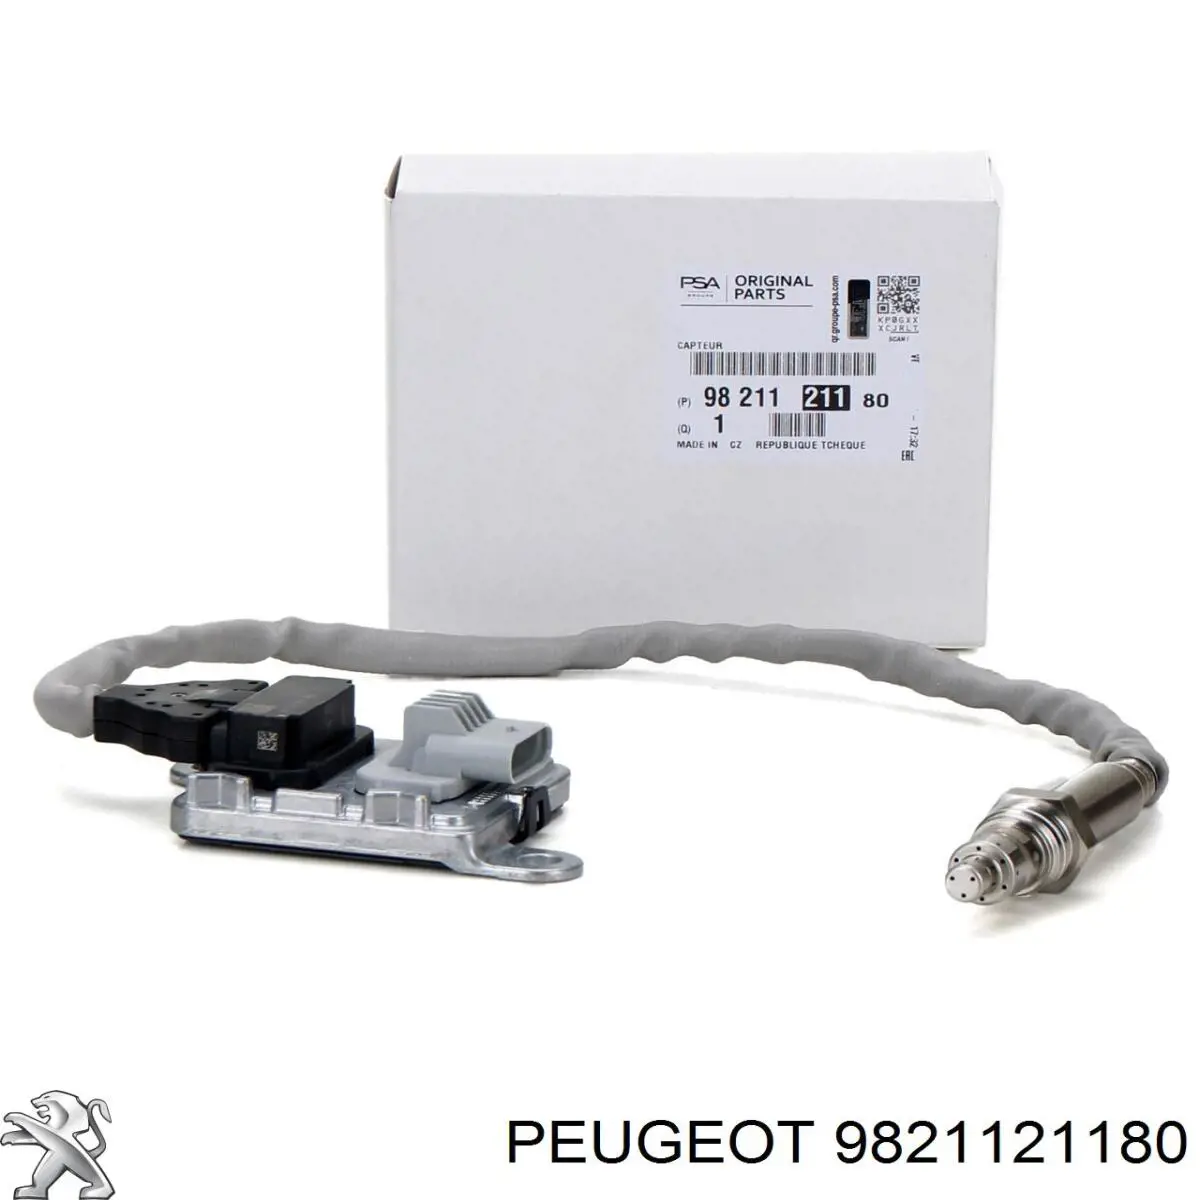 9821121180 Peugeot/Citroen sensor de óxido de nitrógeno nox